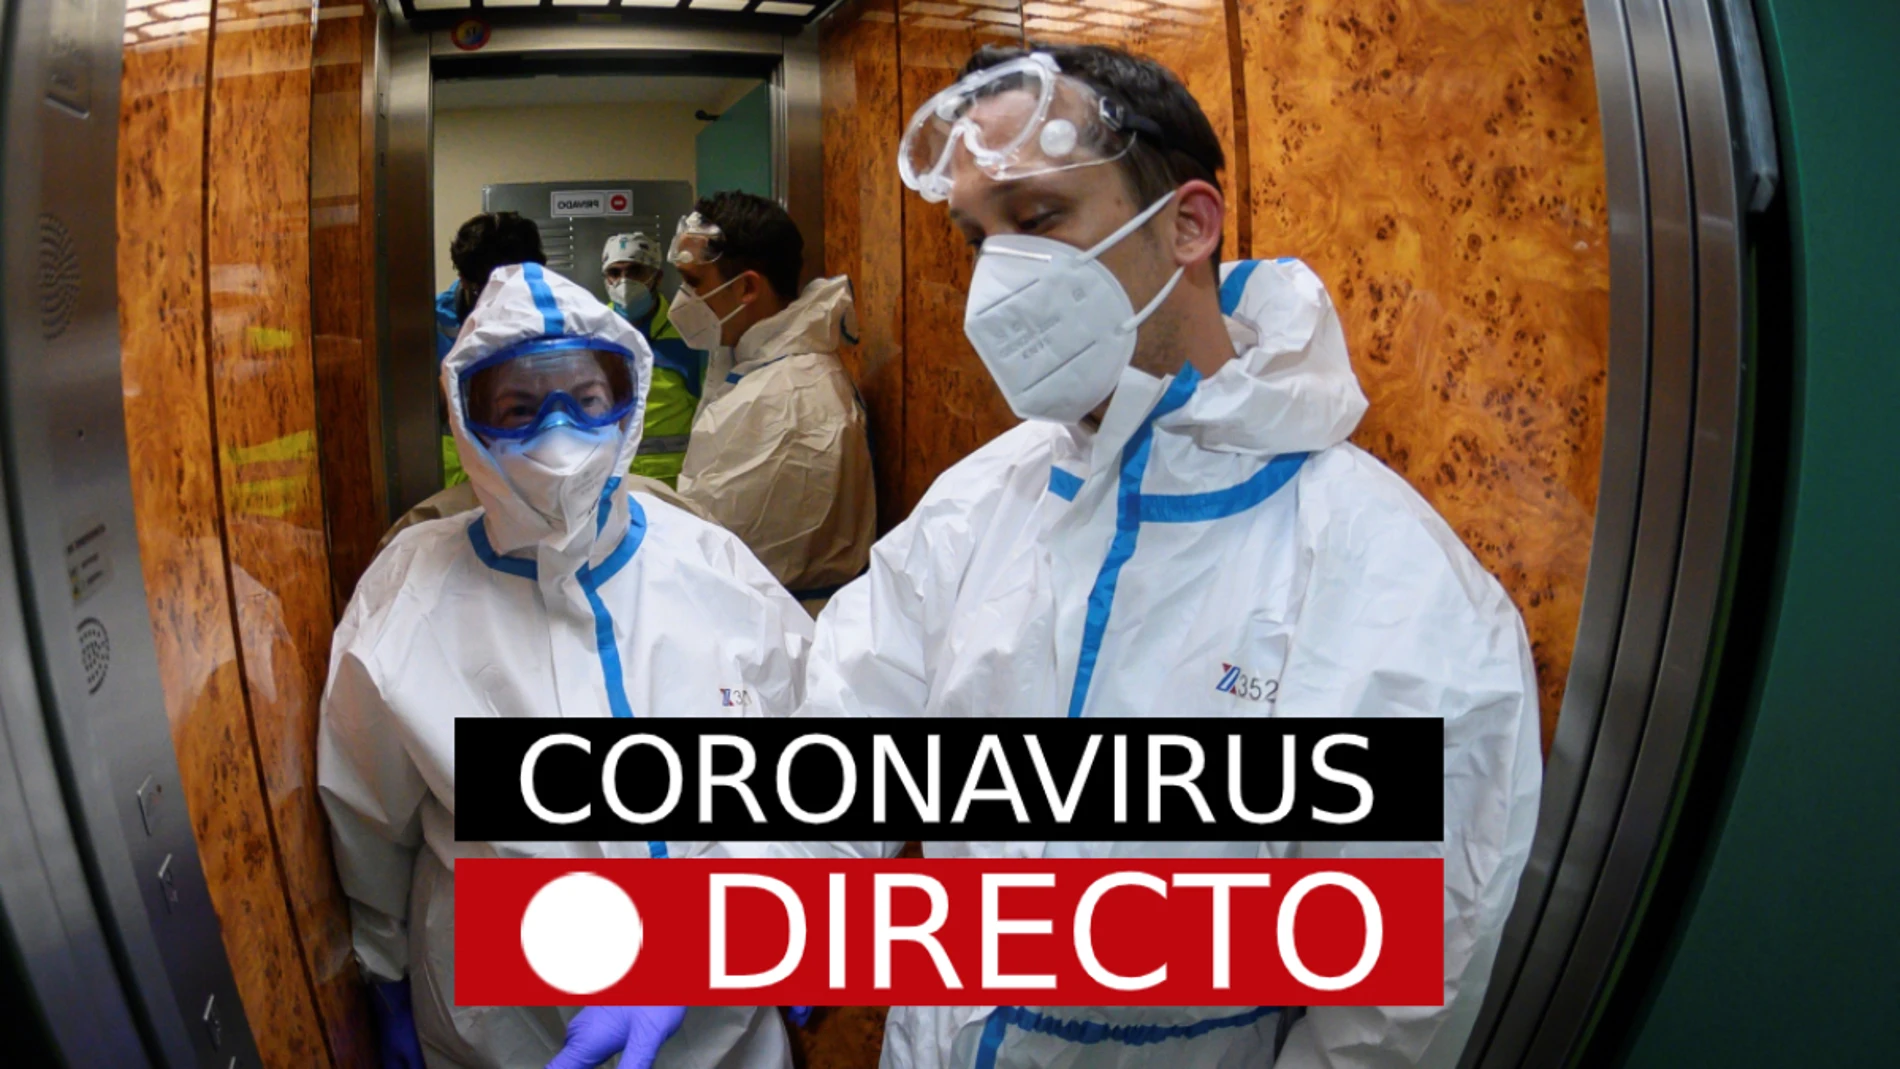 Coronavirus España: nuevos casos, muertos y desescalada de fase 1 y 2, en directo